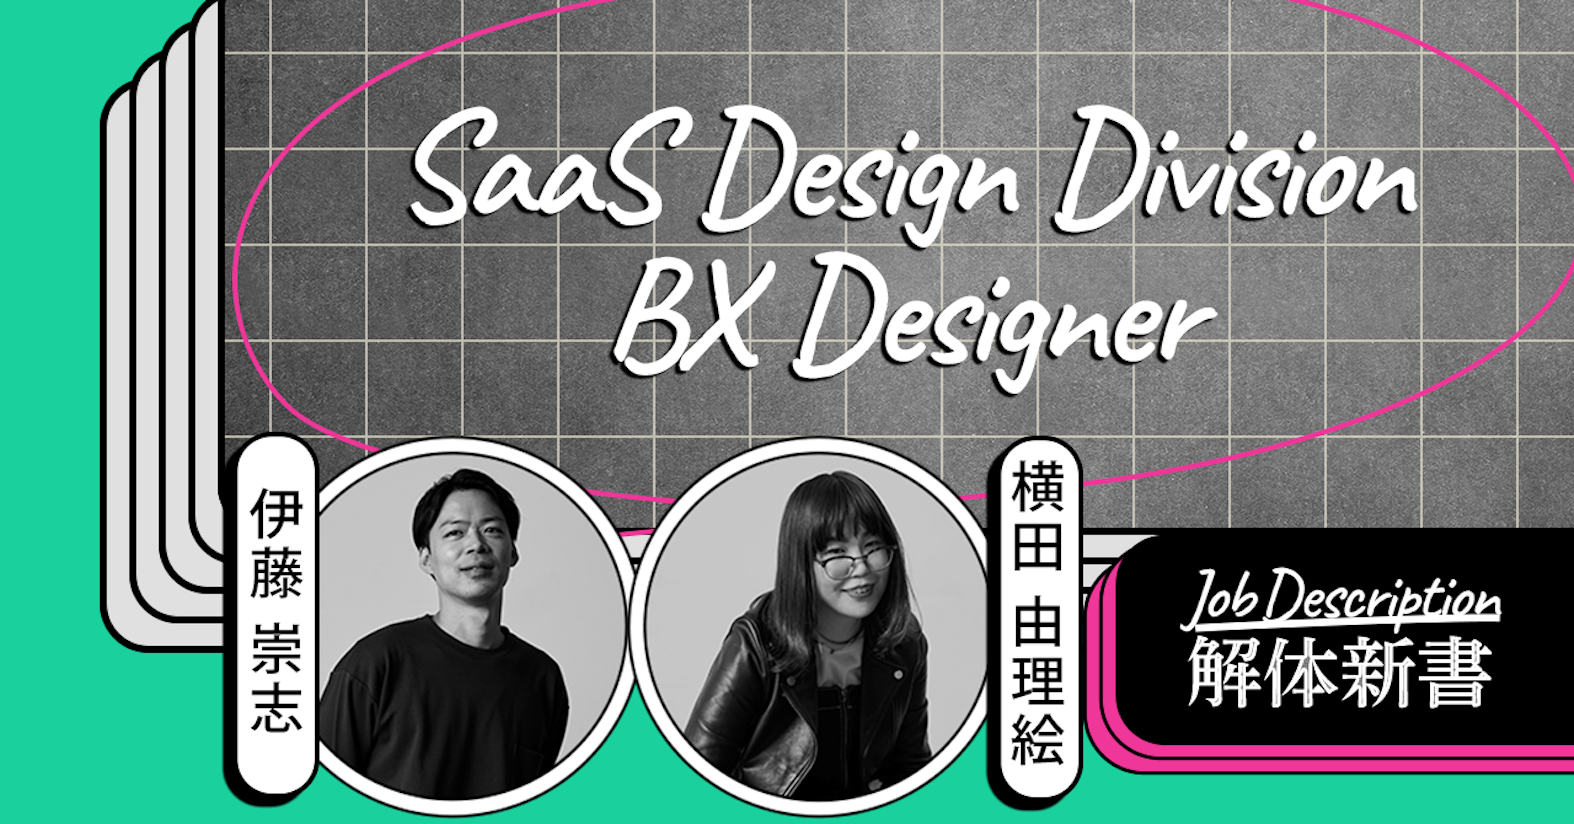 グラフィックから展示会ブースのデザインまで、最高の顧客体験を作り上げる──SaaS Design Division BX Designer